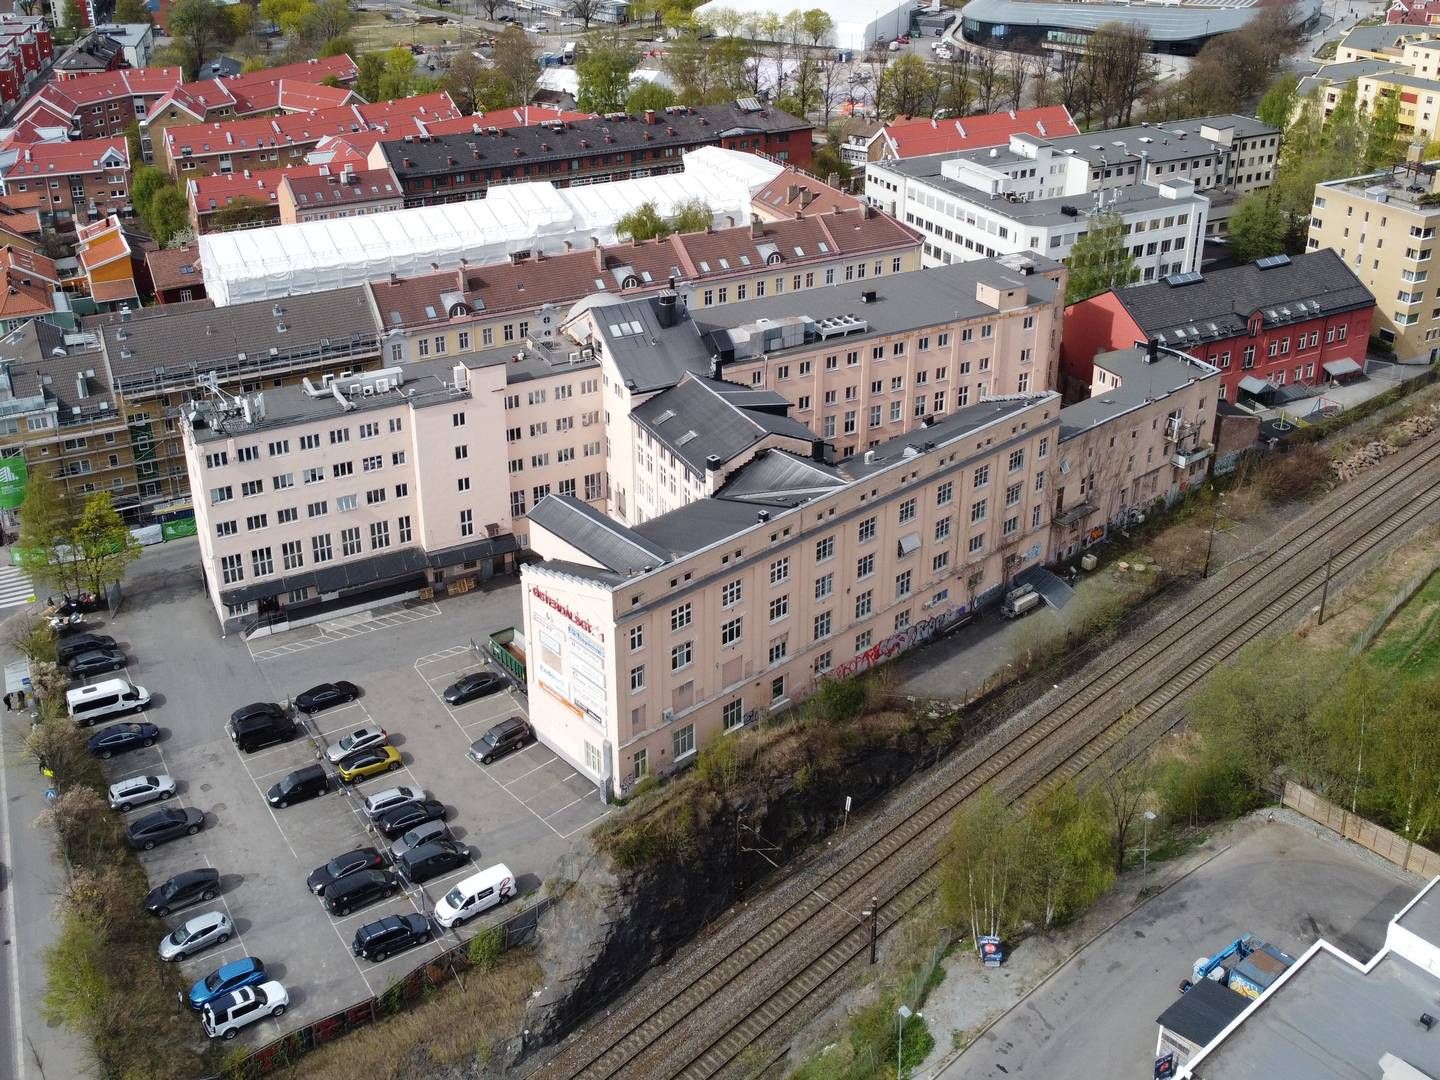 STRIDENS KJERNE: Det store spørsmålet er hva som blir skjebnen til Kjeksfabrikken i Oslo. | Foto: Scandinavian Property Group